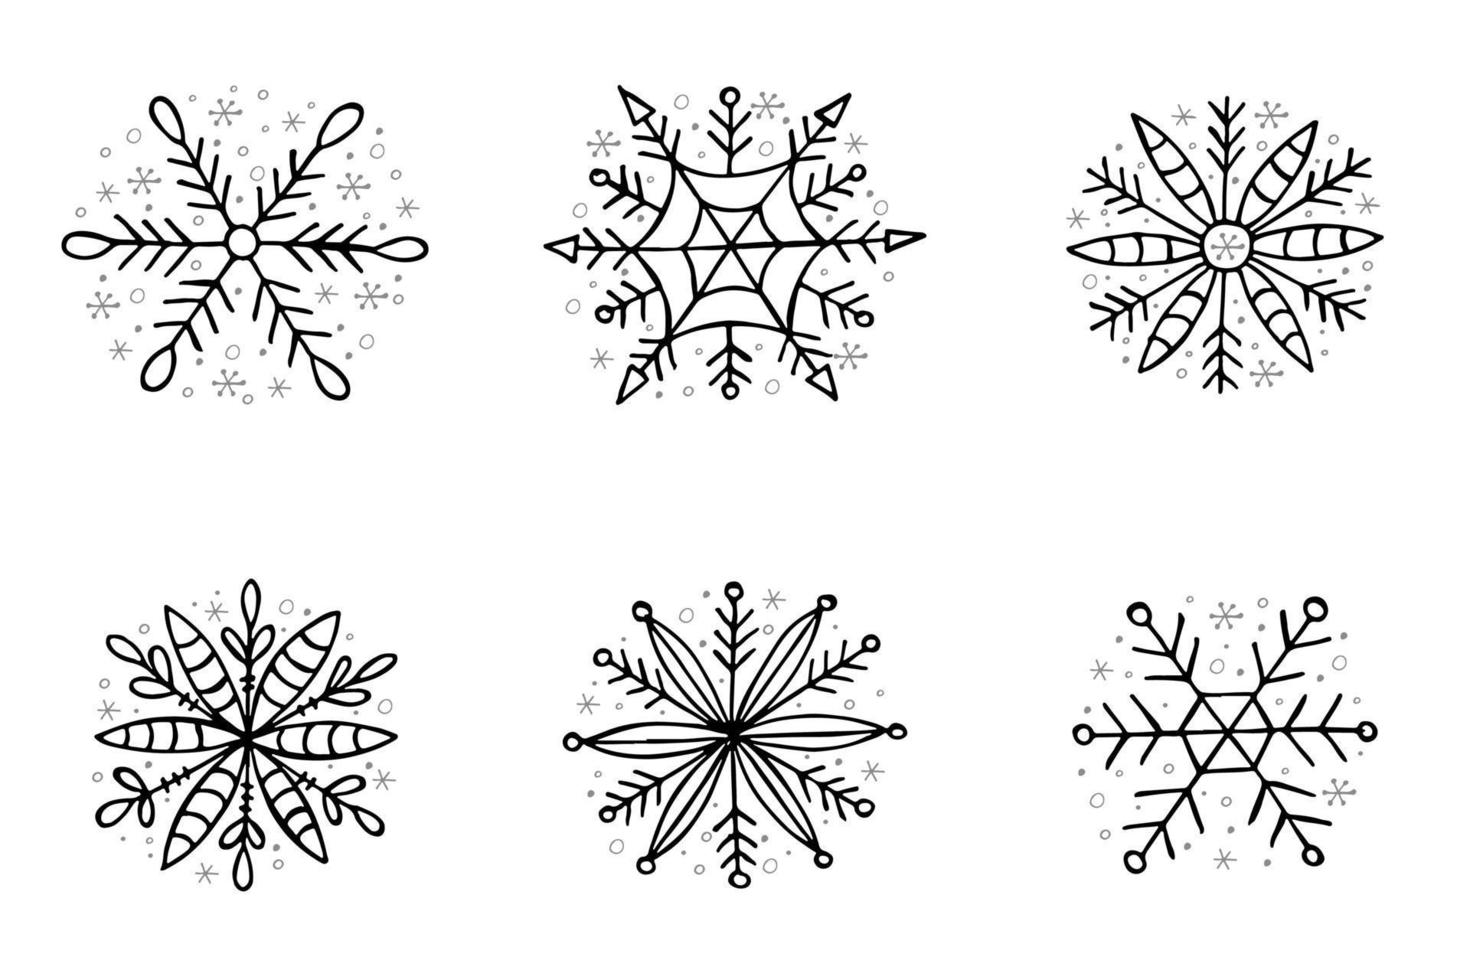 un conjunto de copos de nieve dibujados a mano. ilustración vectorial en estilo garabato. estado de ánimo de invierno. hola 2023. feliz navidad y próspero año nuevo. elementos negros y grises sobre un fondo blanco. vector